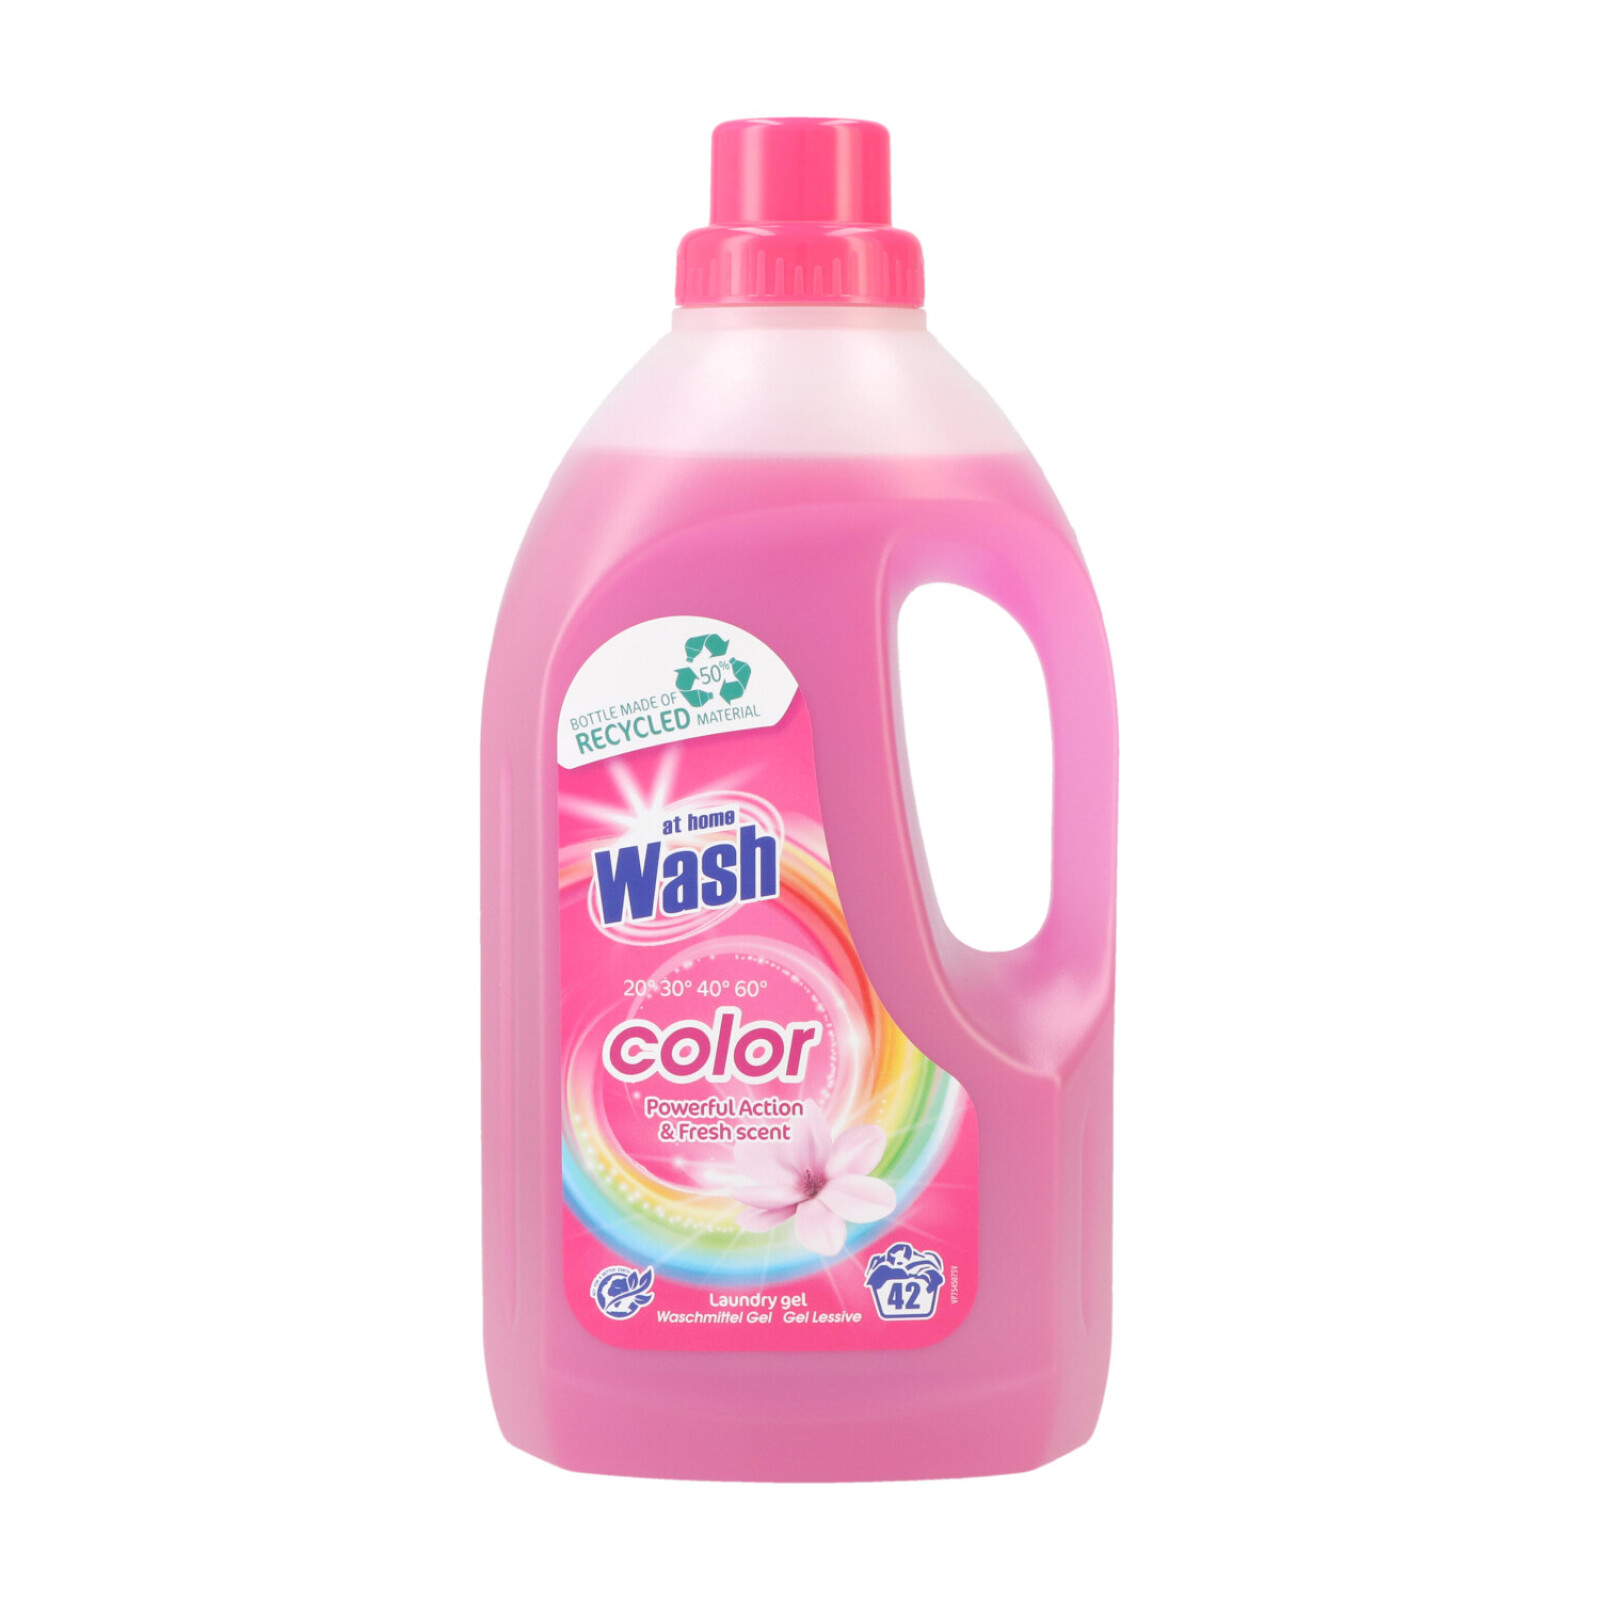 At Home Wash Flüssigwaschmittel GEL! 1.5ltr Color 42WL